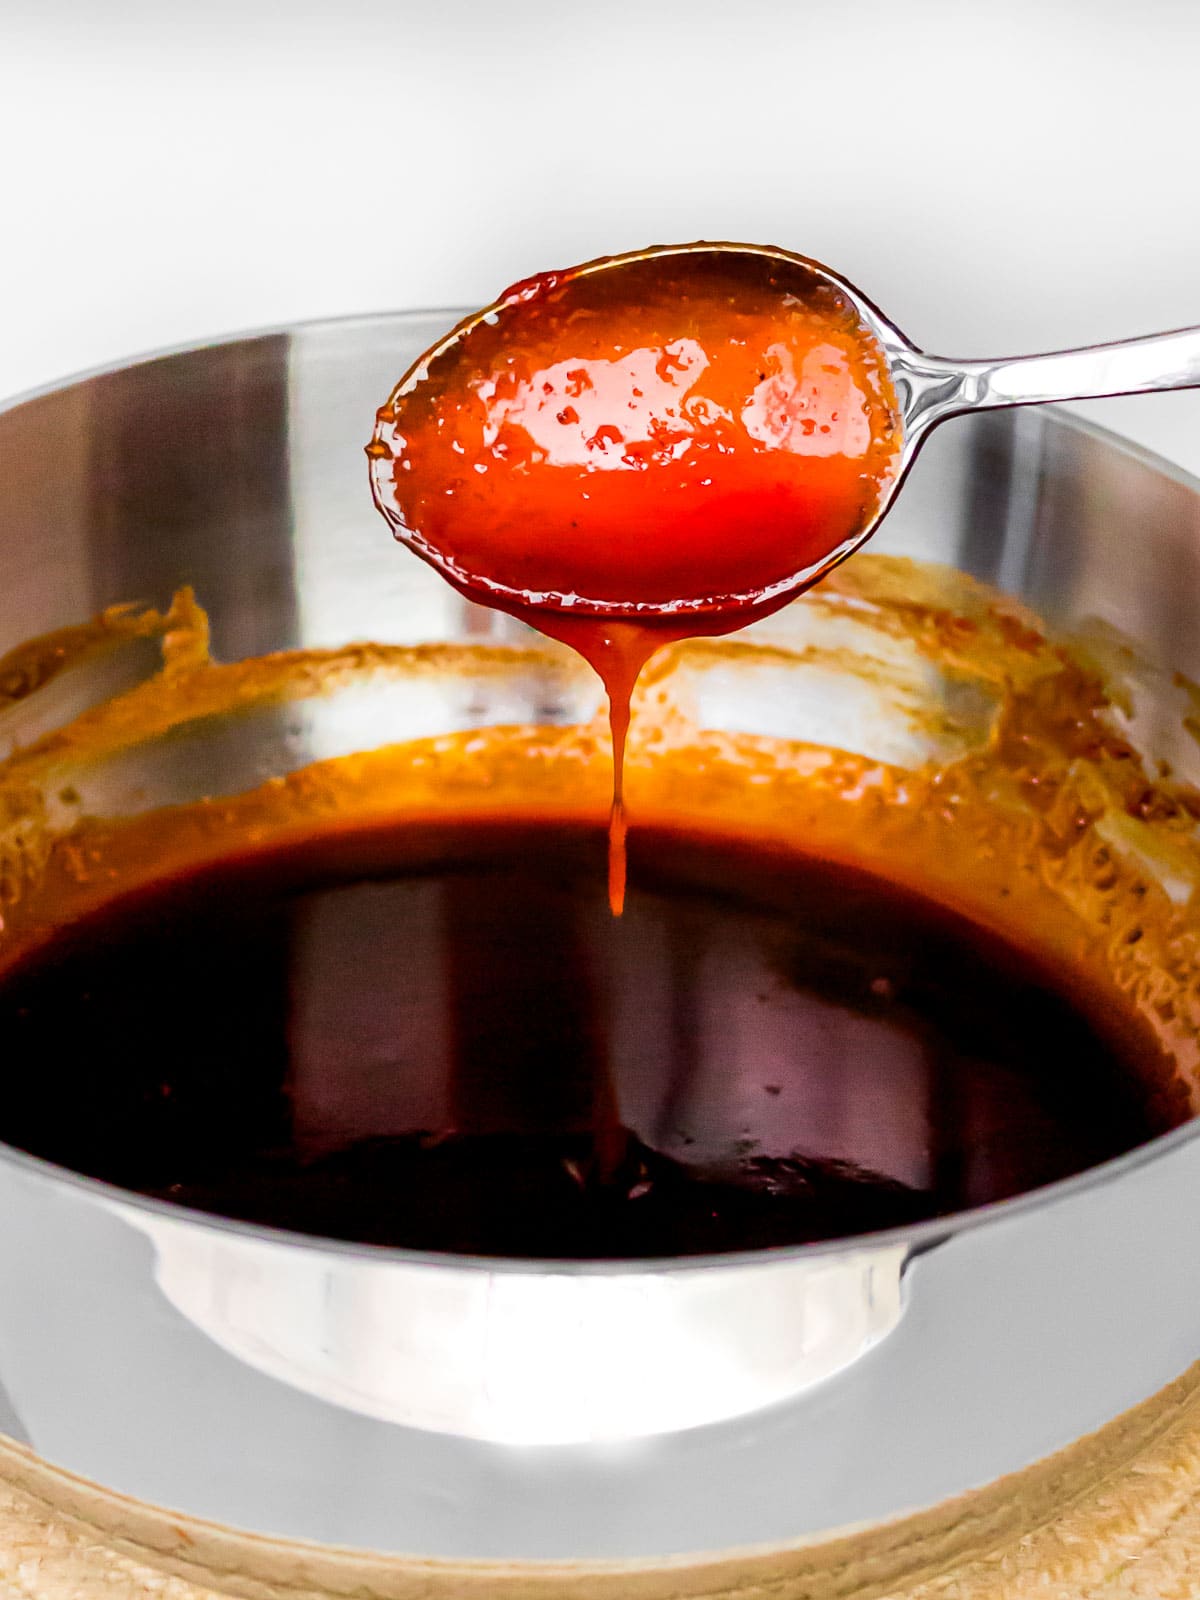 sweet gochujang sauce dripping off a spoon into a pot